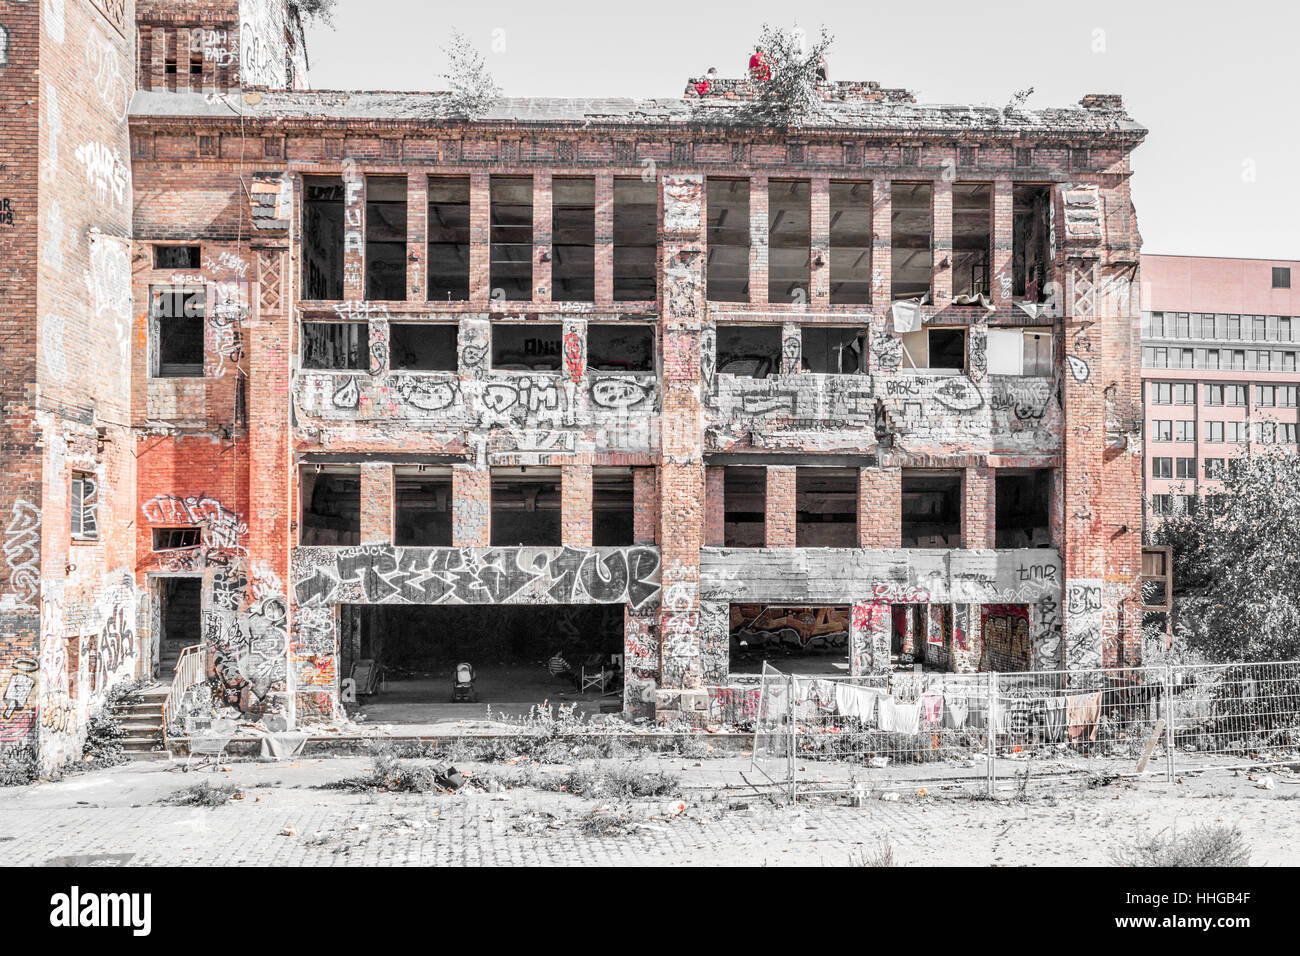 verlassene Fabrik Ruine in Berlin, Deutschland (Eisfabrik) - Graffiti am Gebäude außen Stockfoto